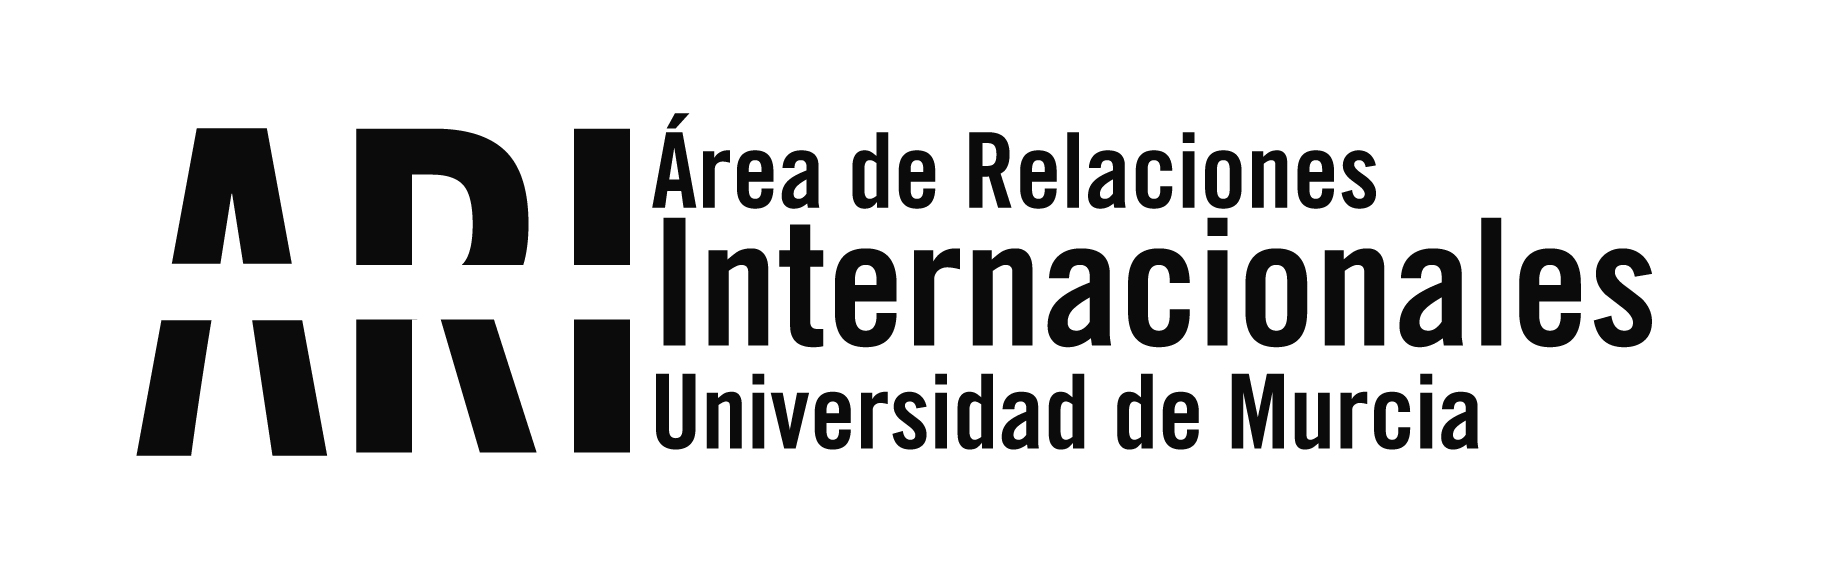 Boletín informativo de Internacionalización 18/2021 // 23 de junio de 2021 - Área de Relaciones Internacionales